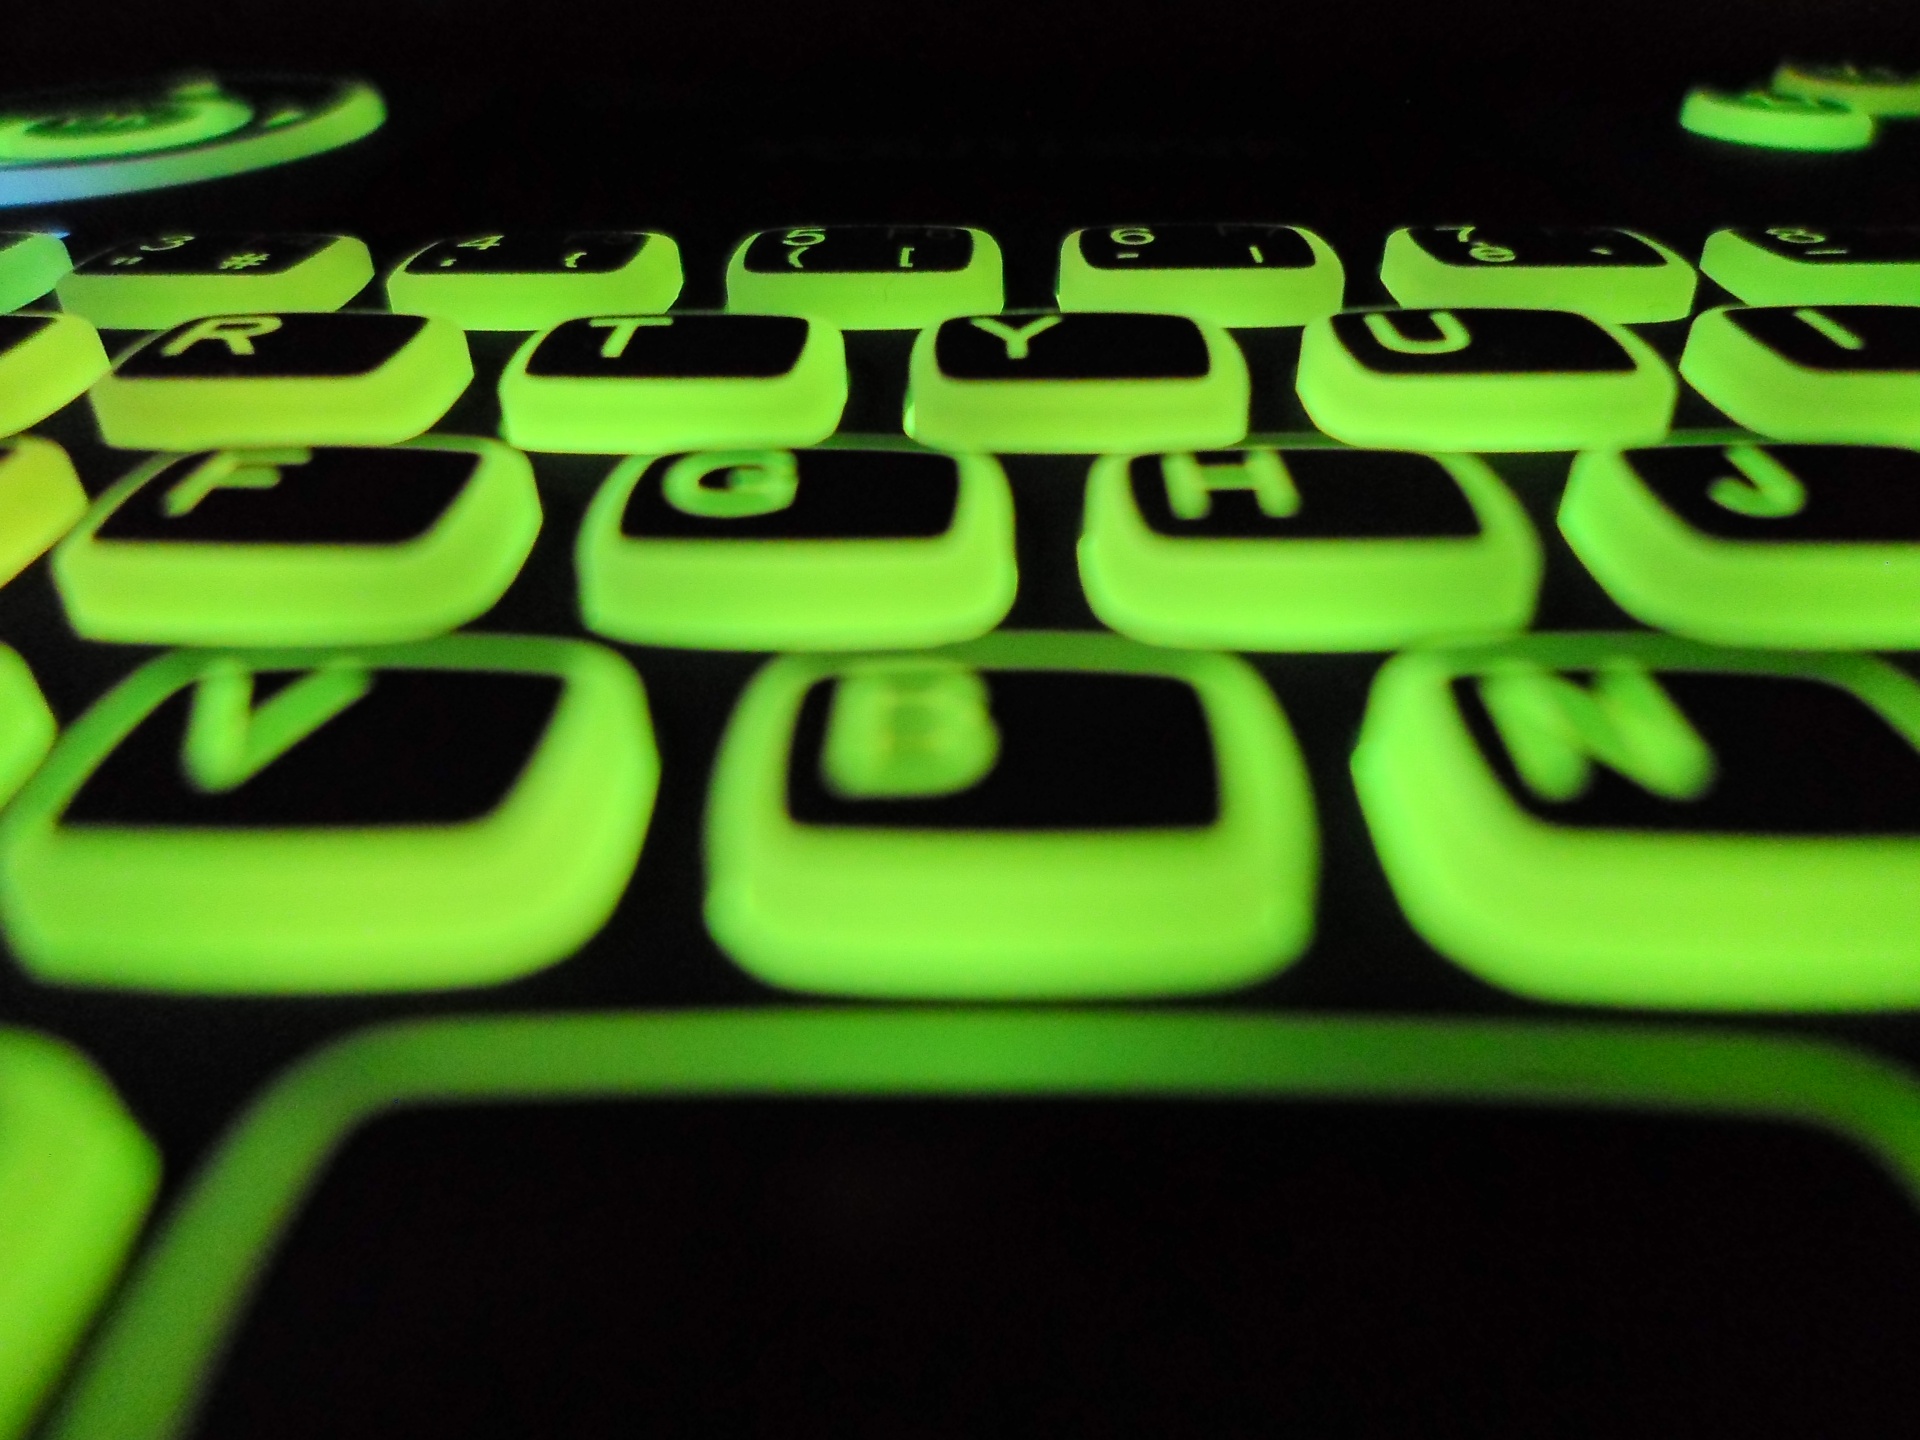 Zielone podświetlenie klawiatury Azerty